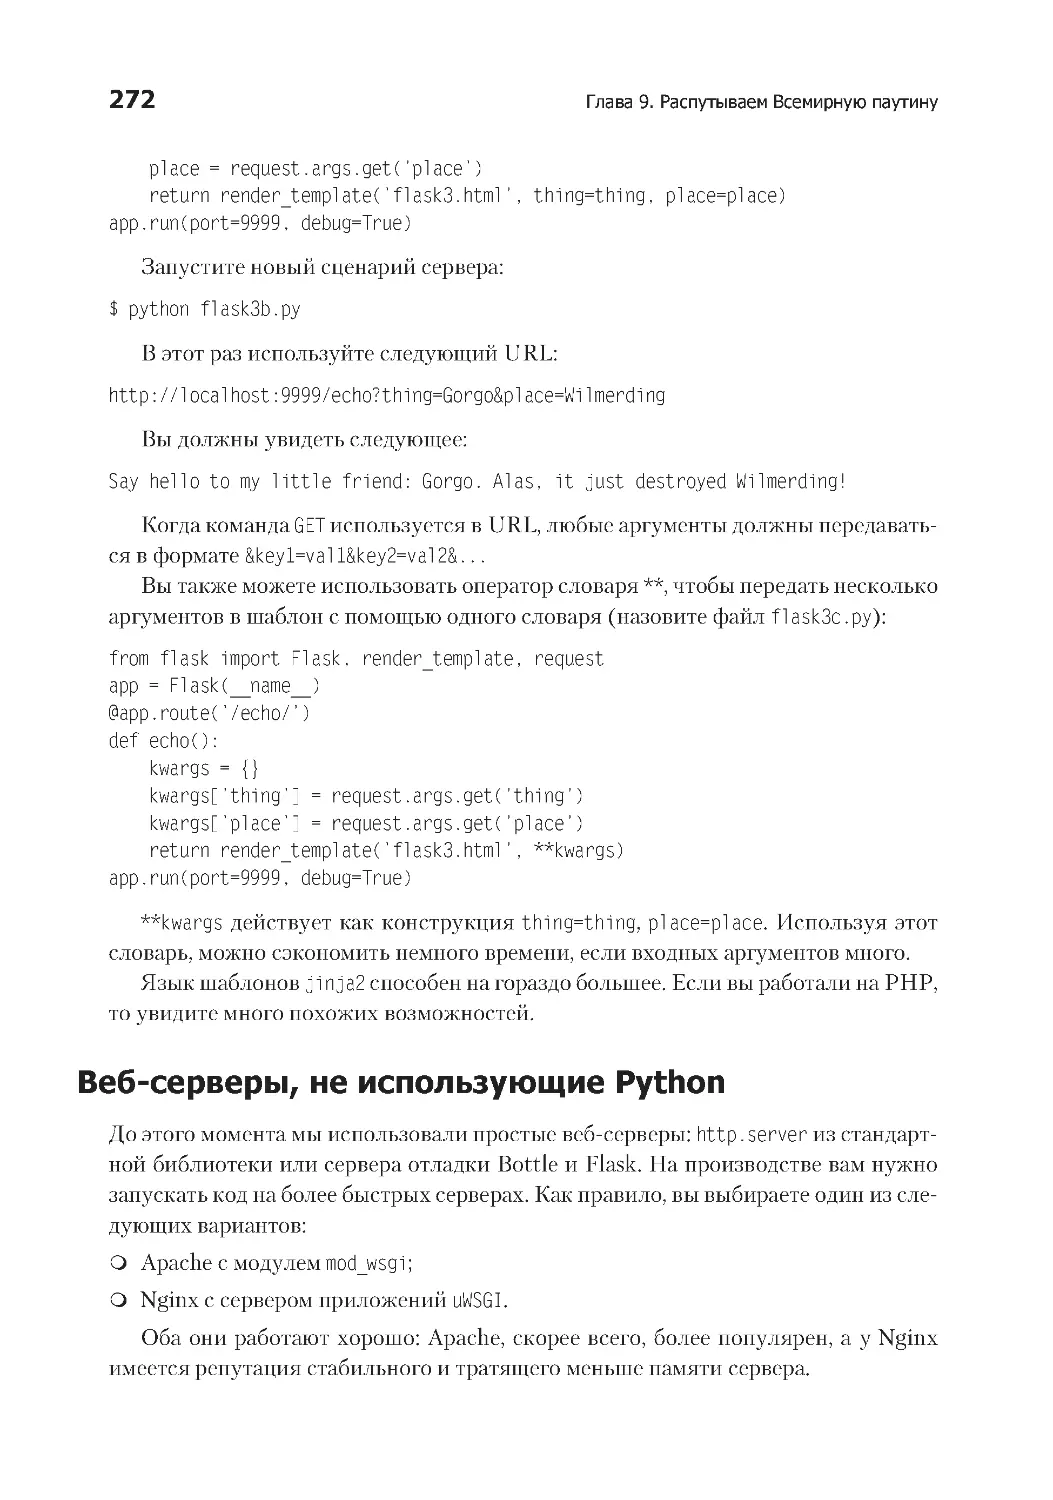 Веб-серверы, не использующие Python